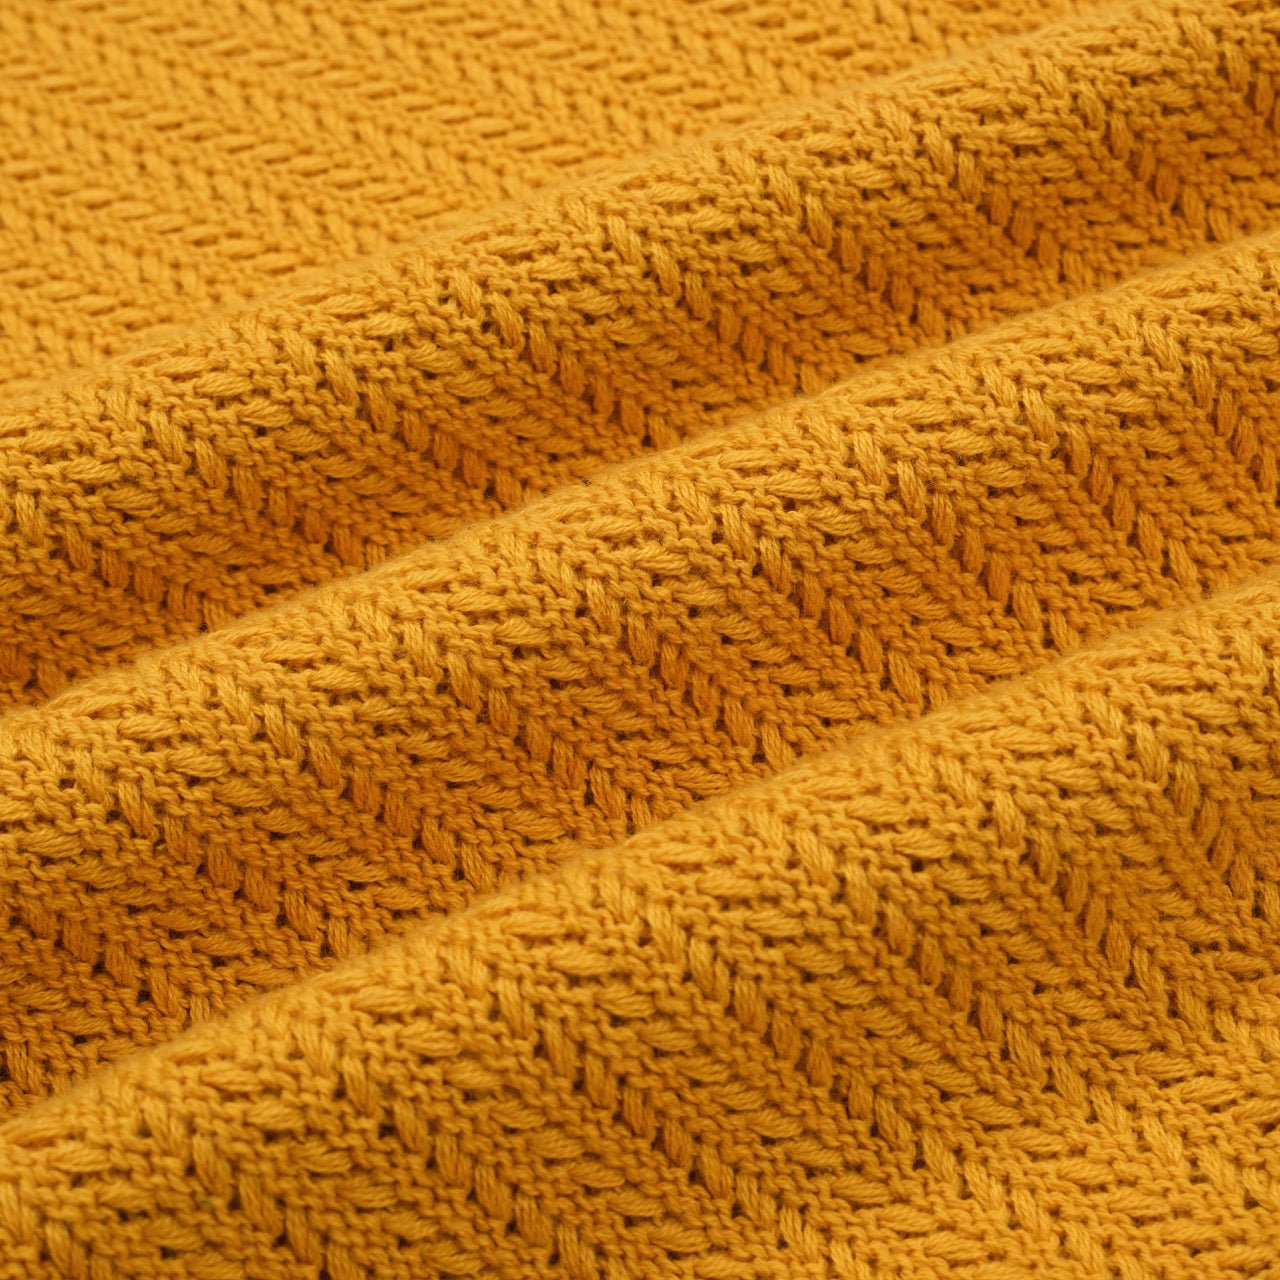 Men's Orange Knitted Polo Off White V-Neck